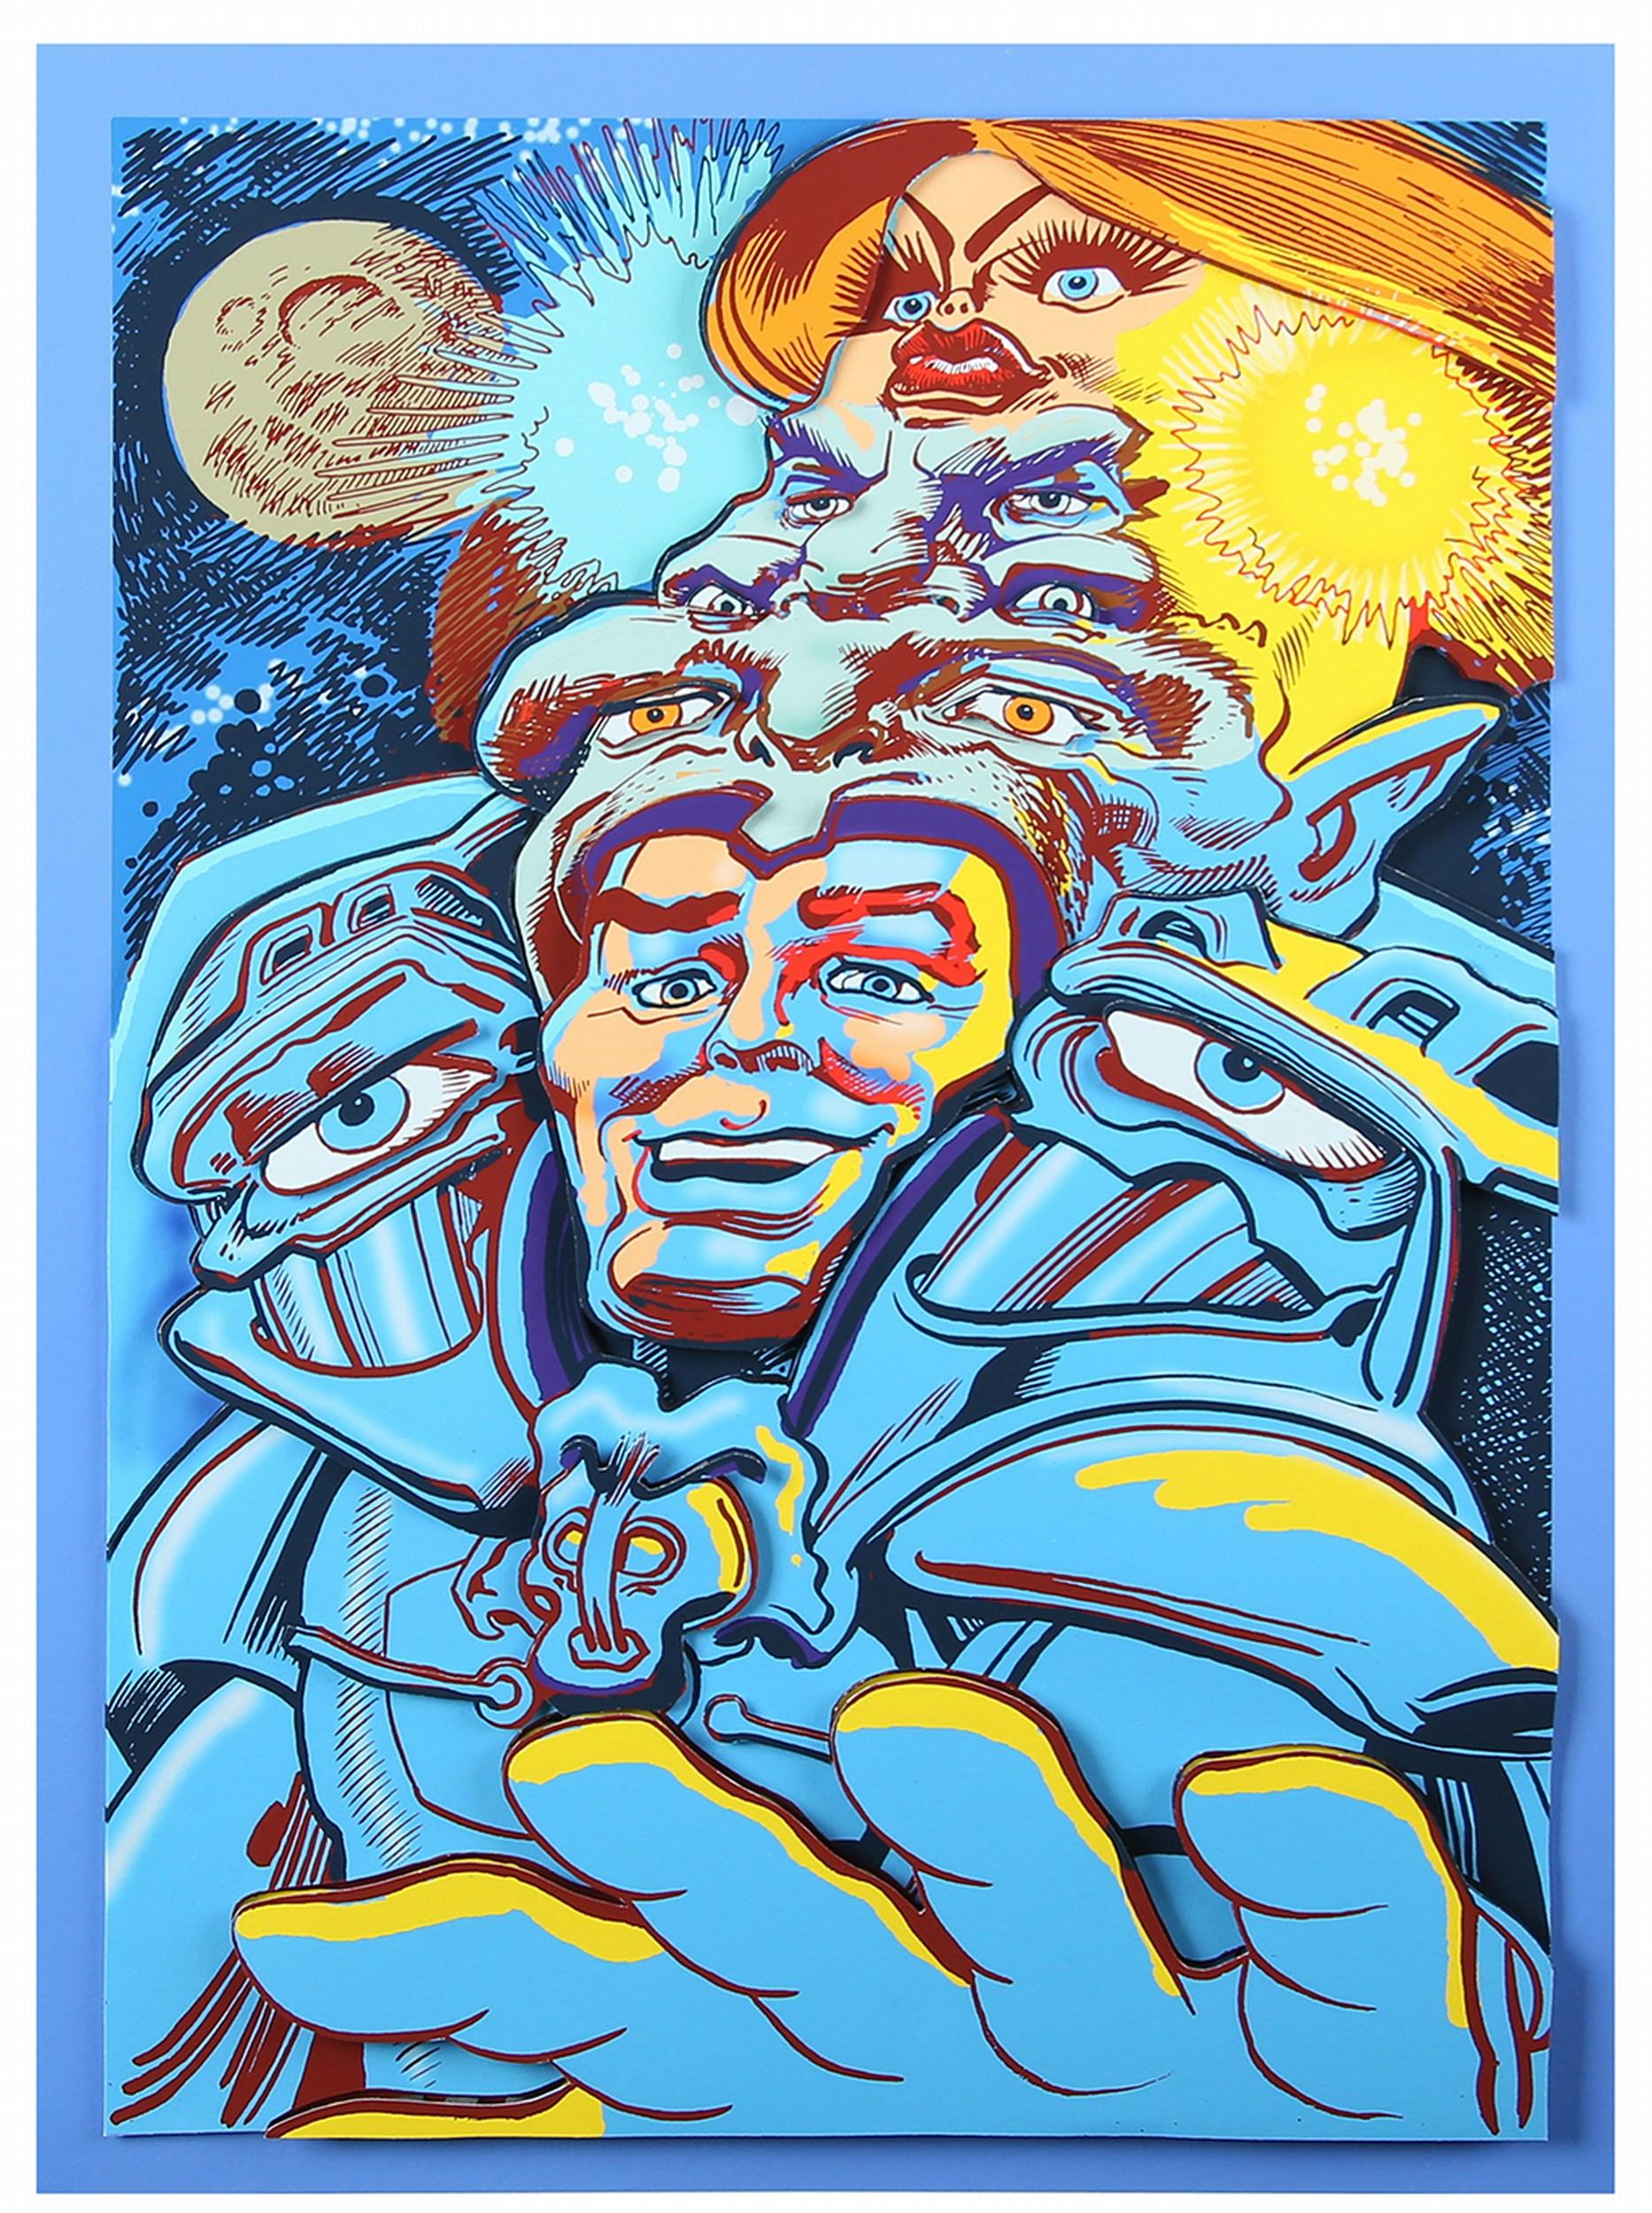 Spacegod ( Pop Art, Street Art, Comic, James Rizzi) - Print de Michael Wittmann